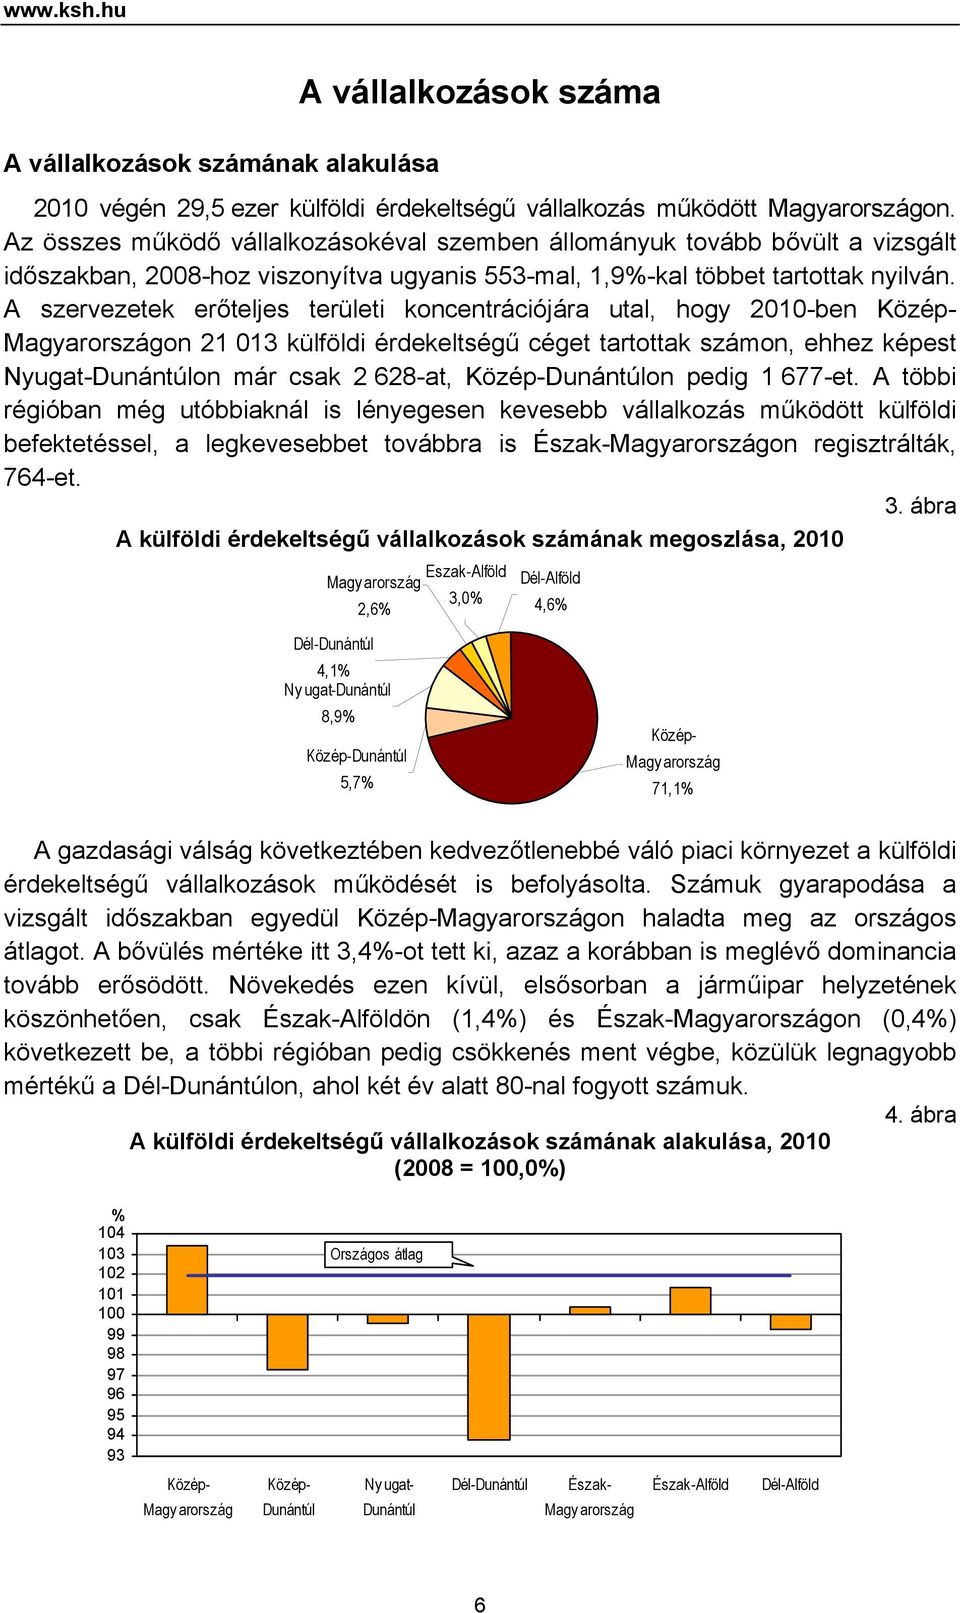 A szervezetek erőteljes területi koncentrációjára utal, hogy 2010-ben Közép- Magyarországon 21 013 külföldi érdekeltségű céget tartottak számon, ehhez képest Nyugat-Dunántúlon már csak 2 628-at,